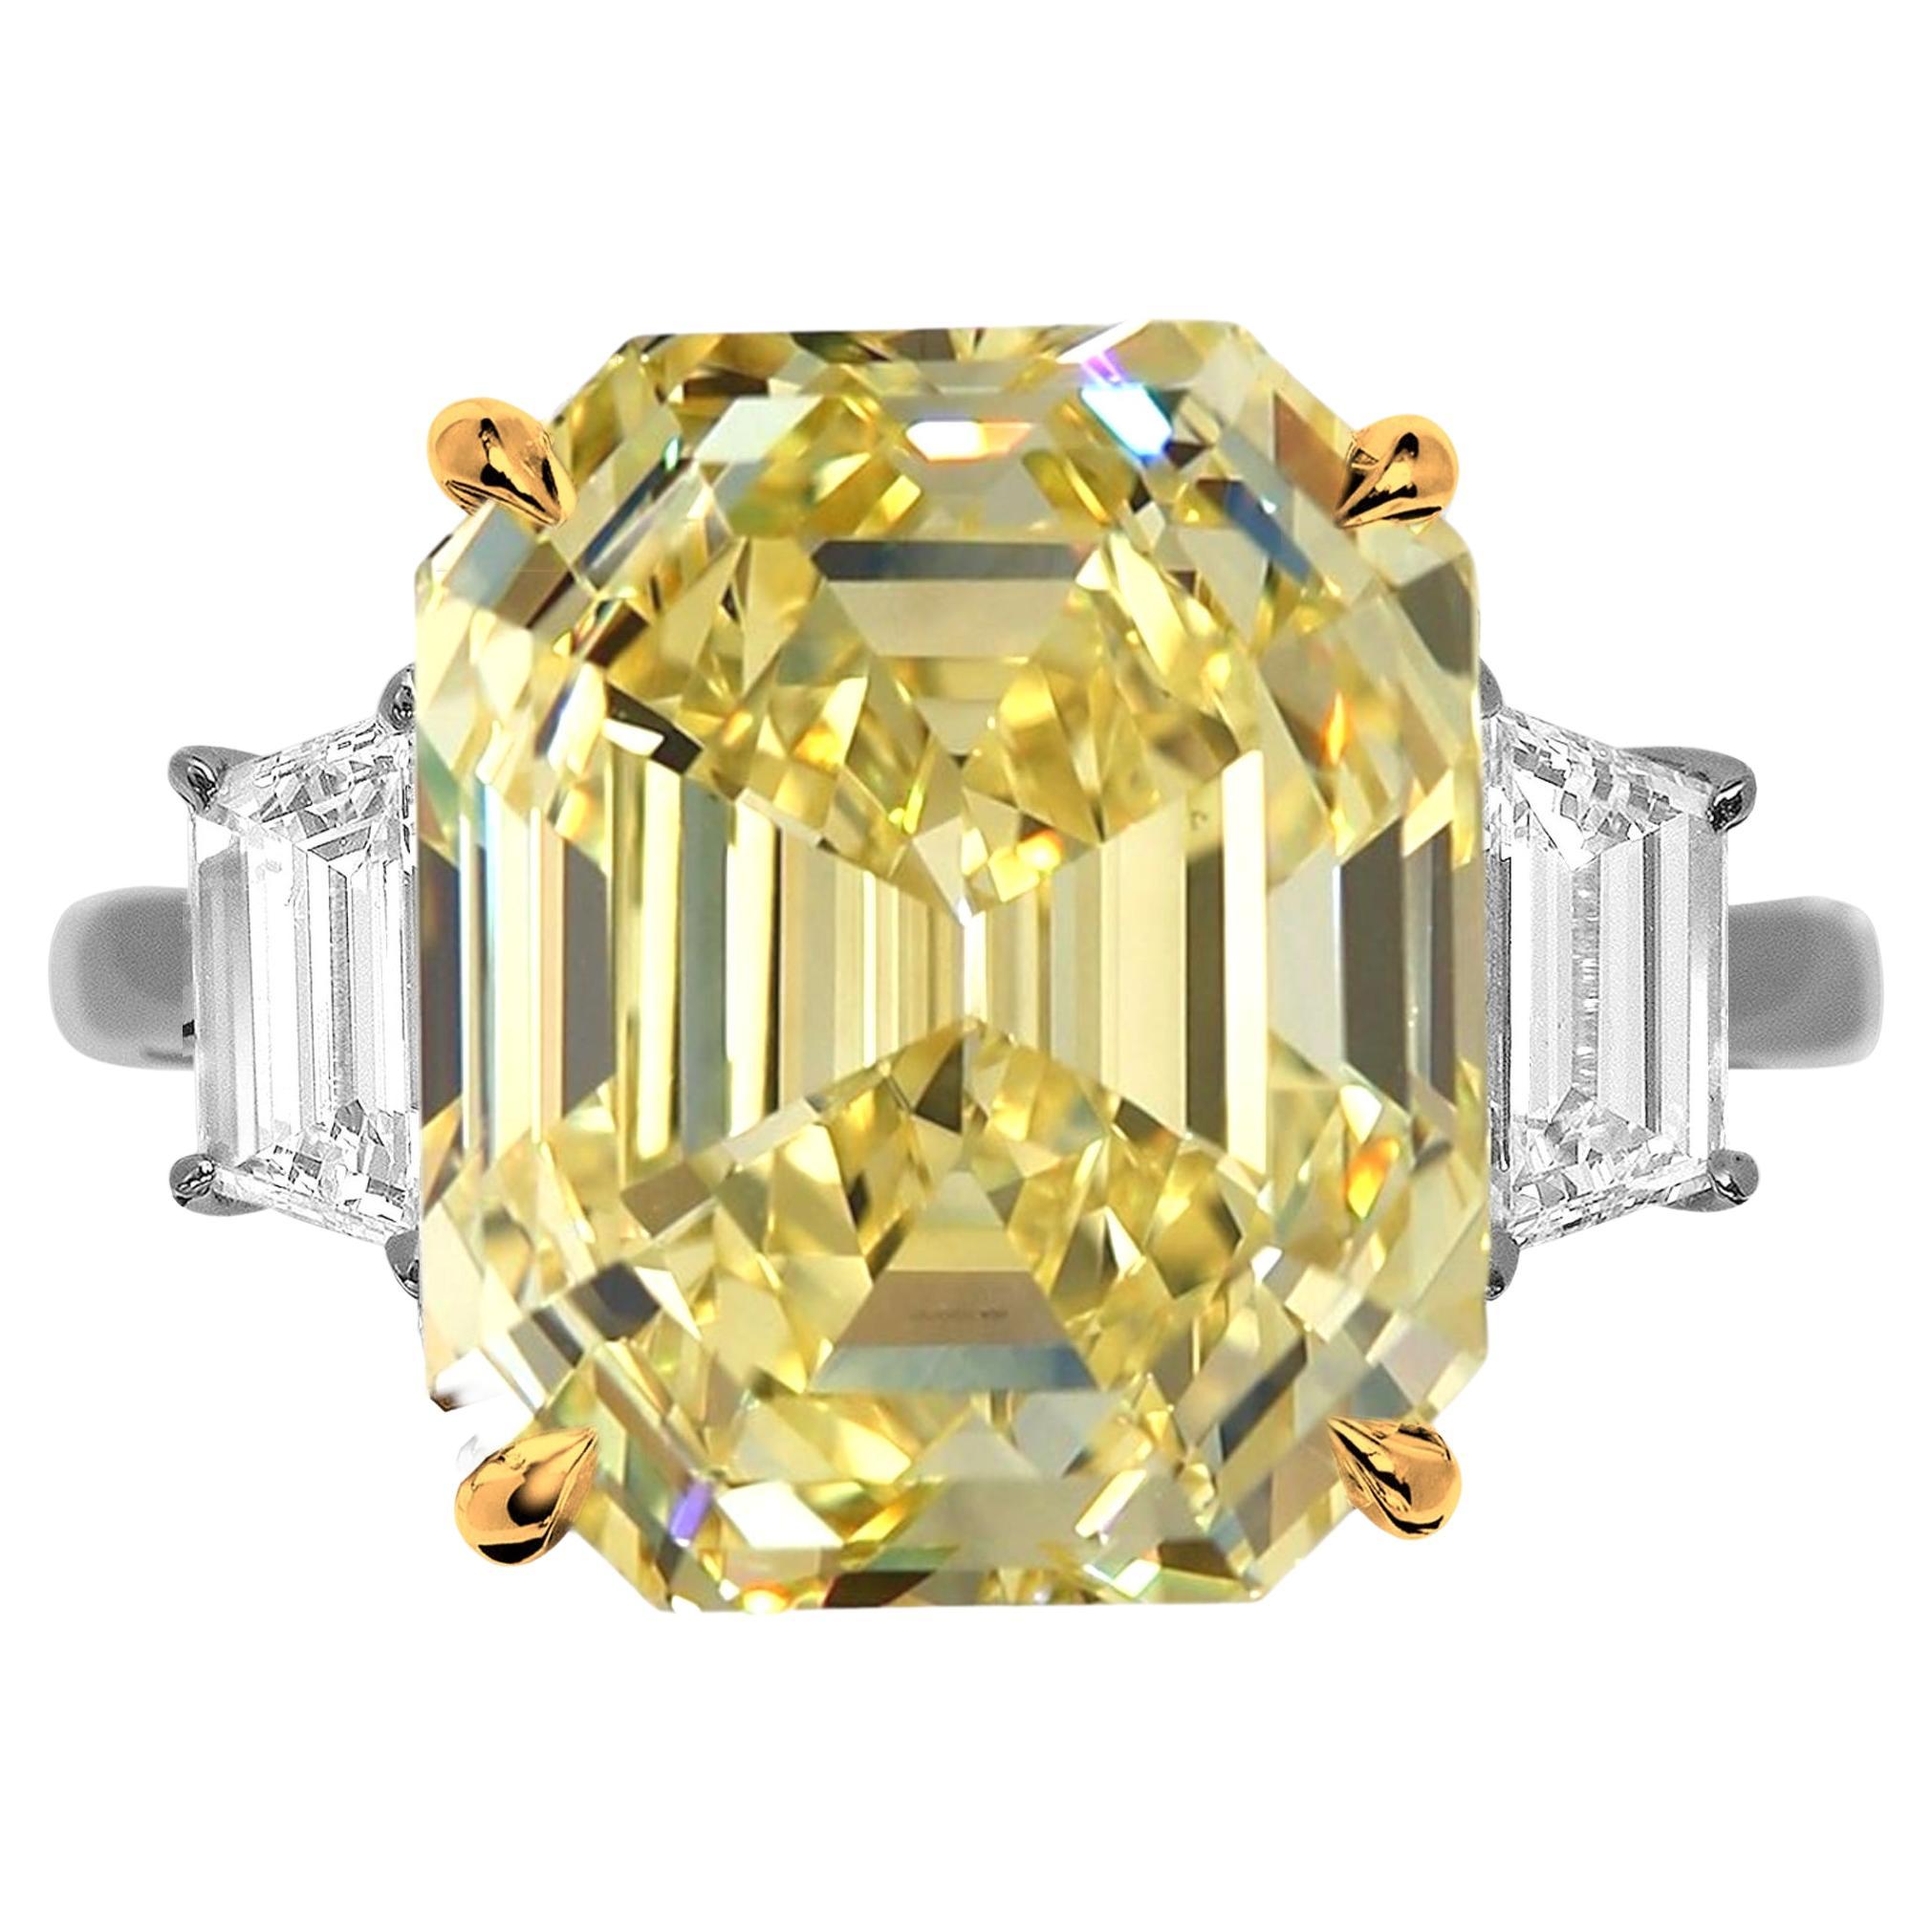 GIA Certified 5 Carat Fancy Yellow Emerald Cut Diamond Ring